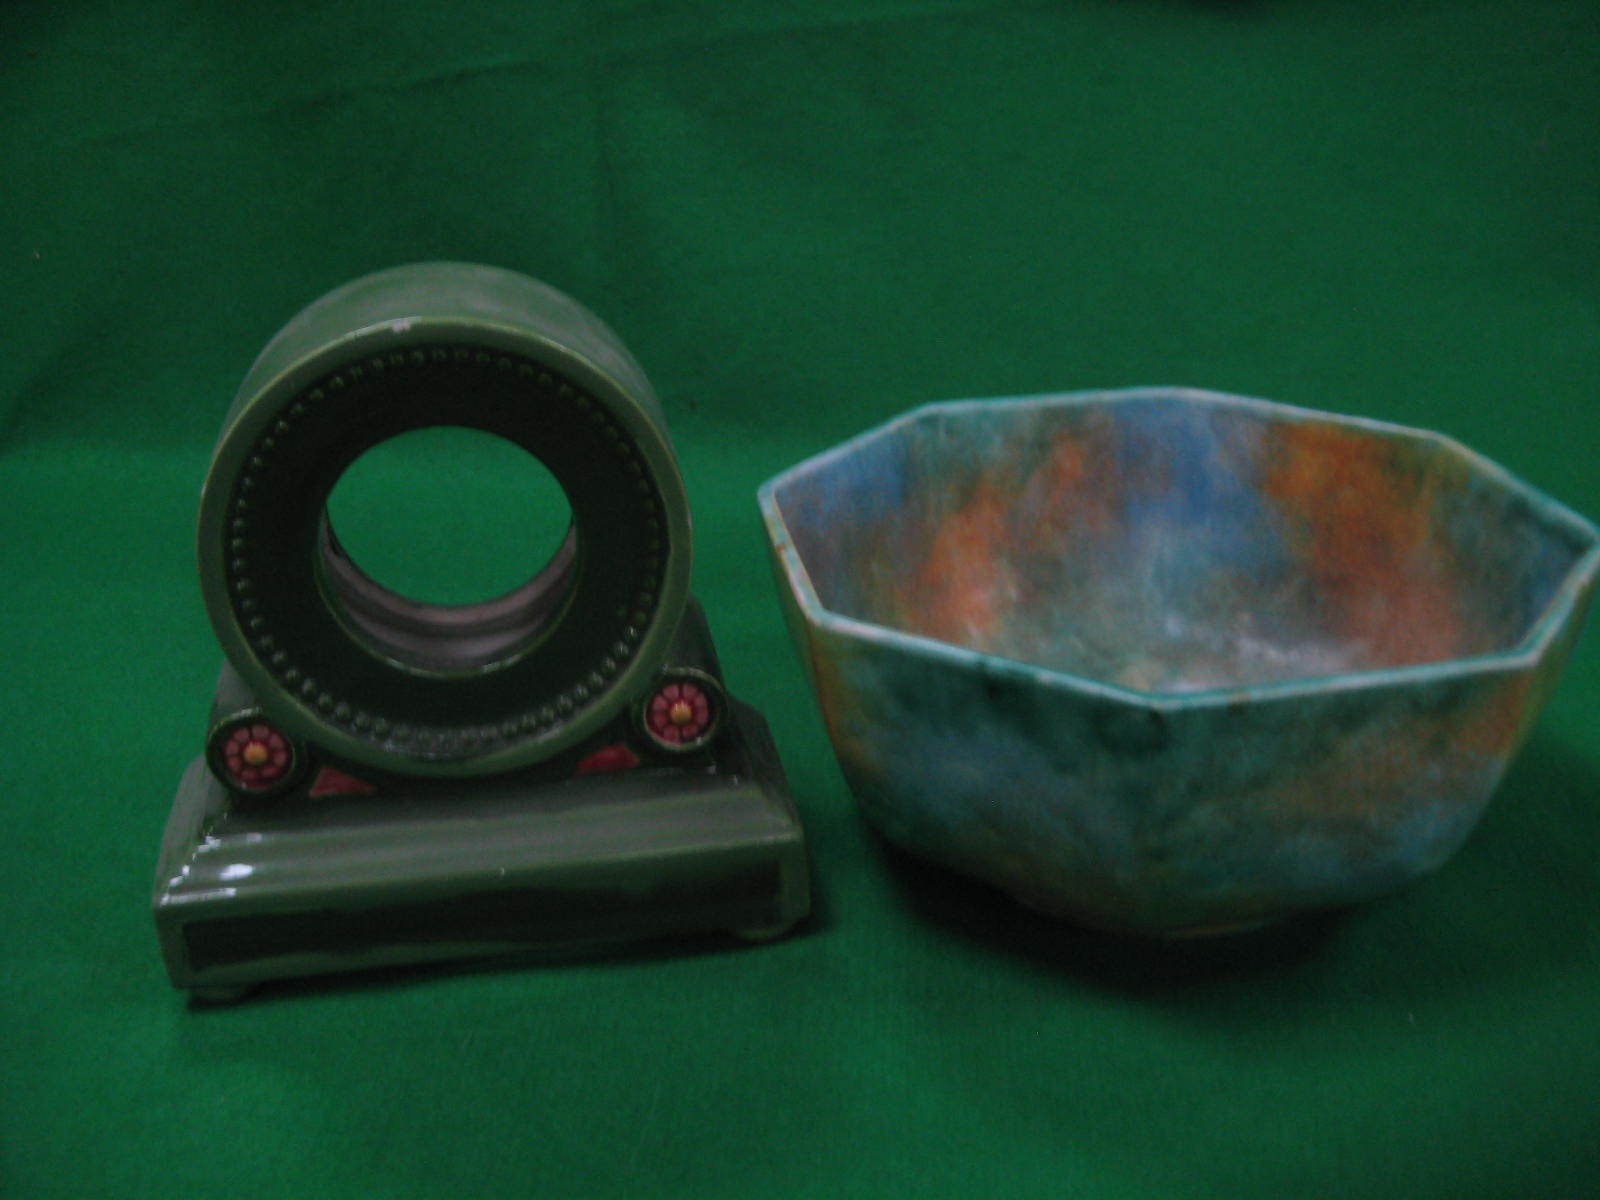 An art deco octagonal bowl and a green clock case